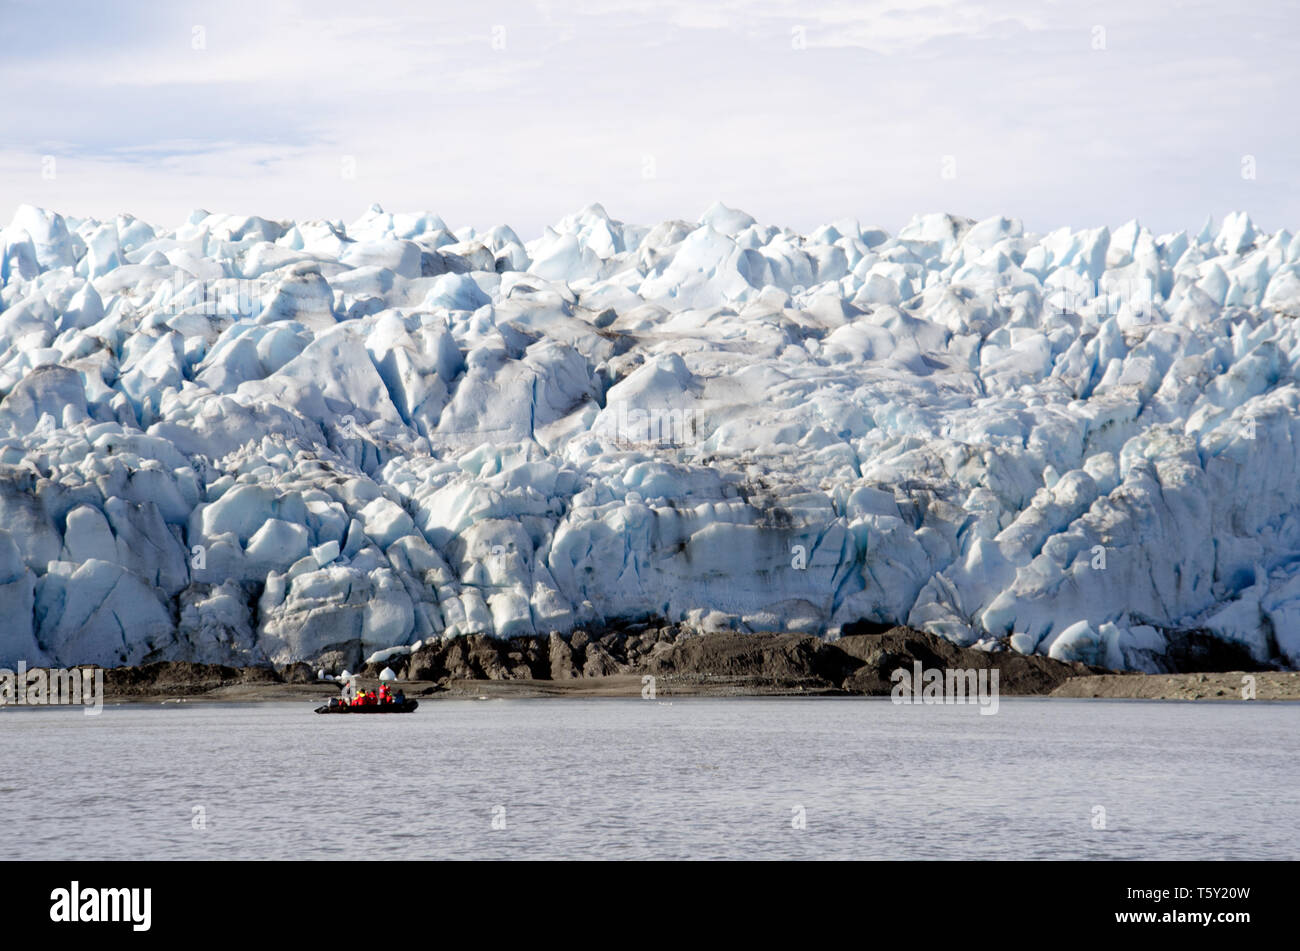 La gran Pio XI, o Bruggen, glaciar en el sur de Chile es de 5 km de ancho, y--inusualmente--avance Foto de stock